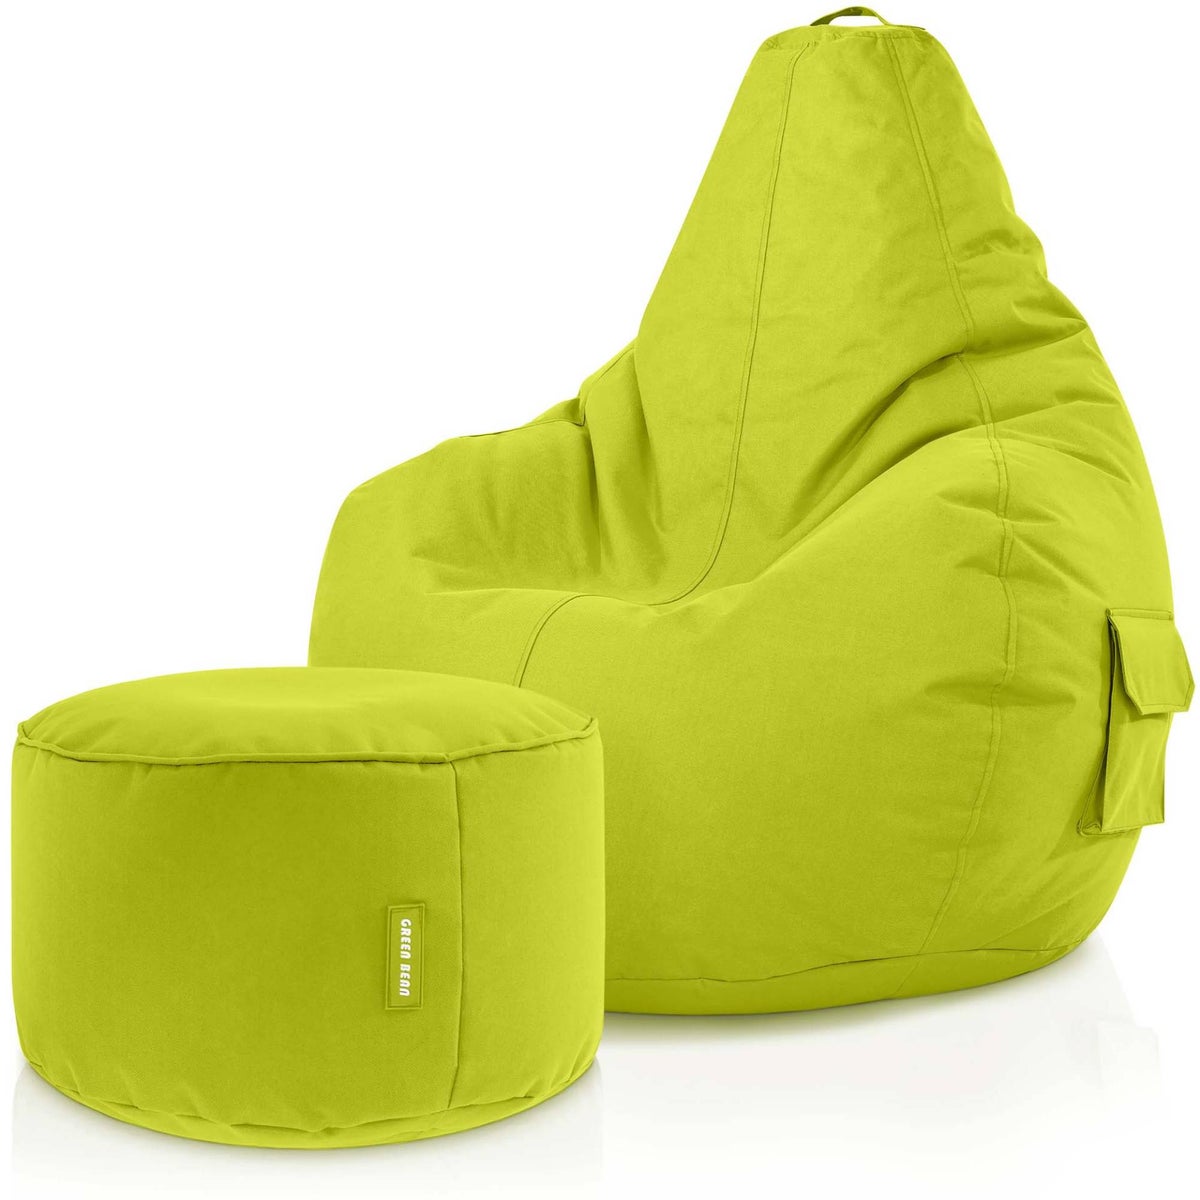 Green Bean© 2er Set Sitzsack + Hocker - fertig befüllt - robust waschbar schmutzabweisend - Kinder &amp; Erwachsene Bean Bag Bodenkissen Lounge Sitzhocker Relax-Sessel Gamer Gamingstuhl Pouf - Hellgrün